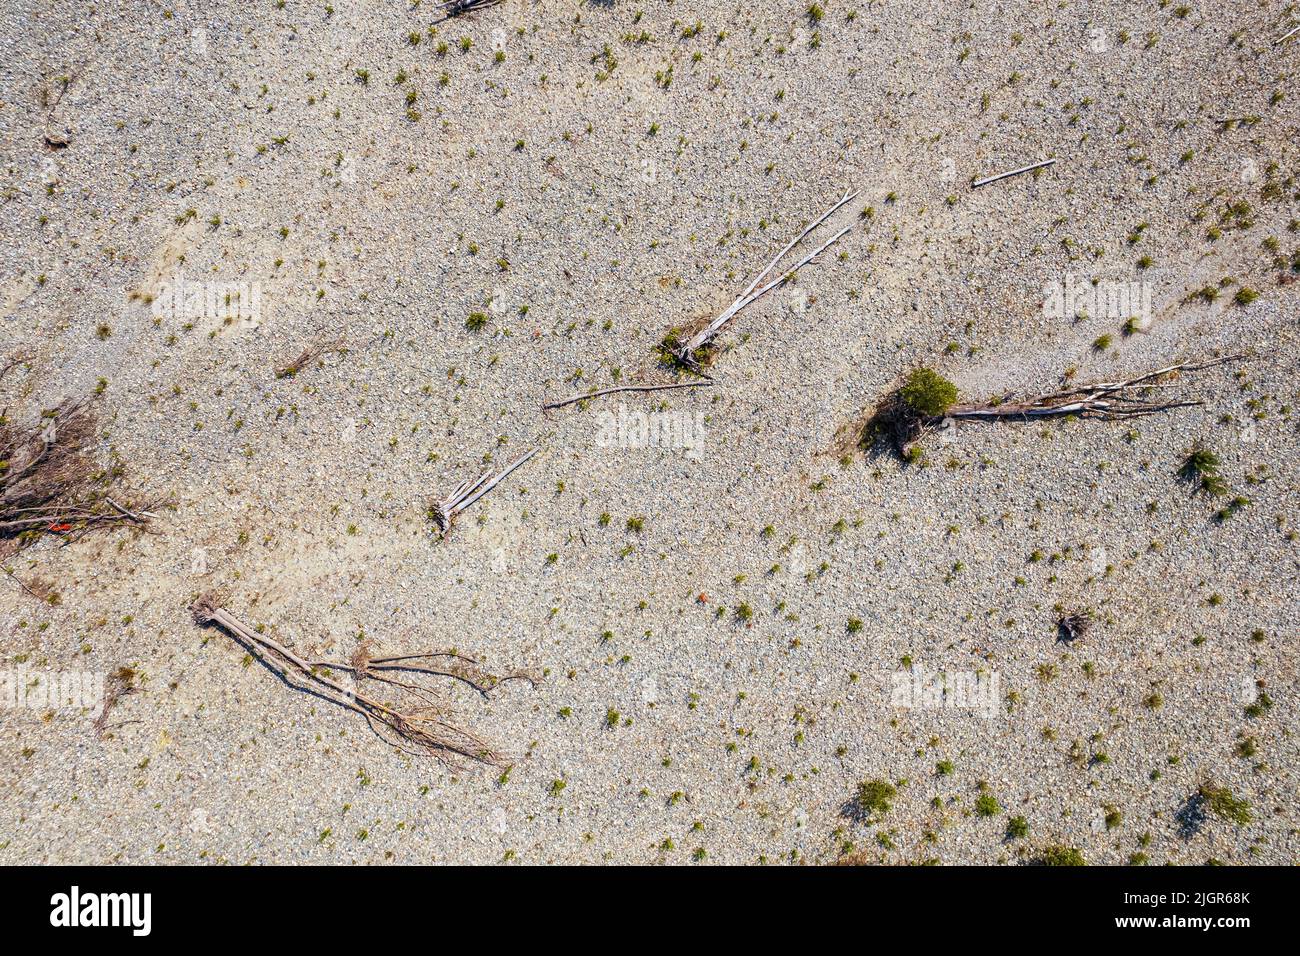 Beispiellose Dürre im Po-Fluss aufgrund von langen Niederschlagsmangels. Verrua Savoia, Italien - Juli 2022 Stockfoto